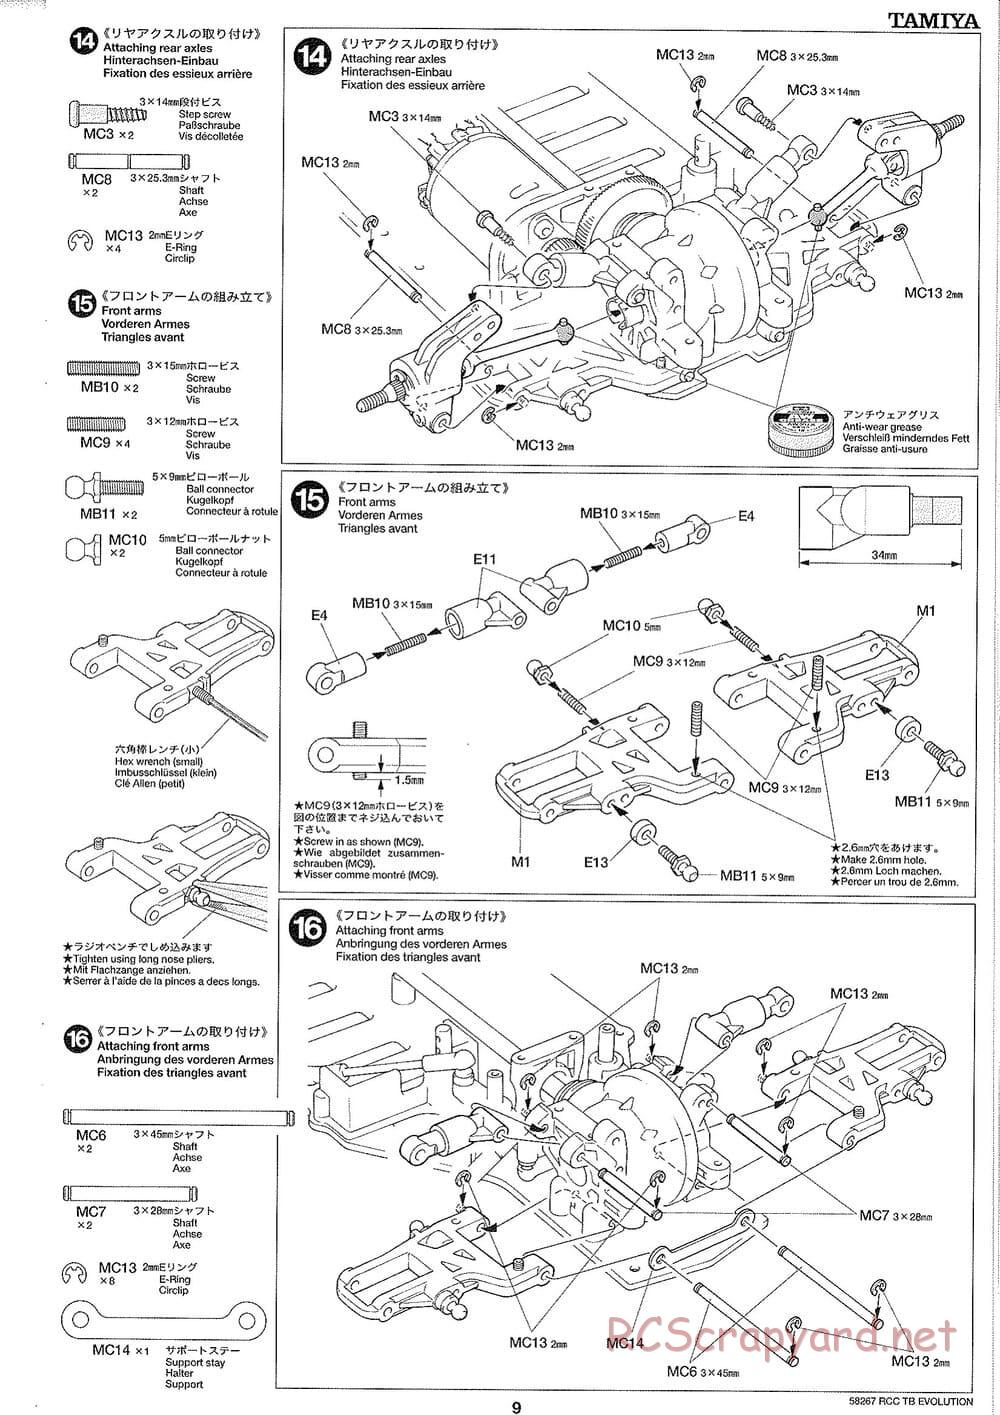 Tamiya - TB Evolution Chassis - Manual - Page 9